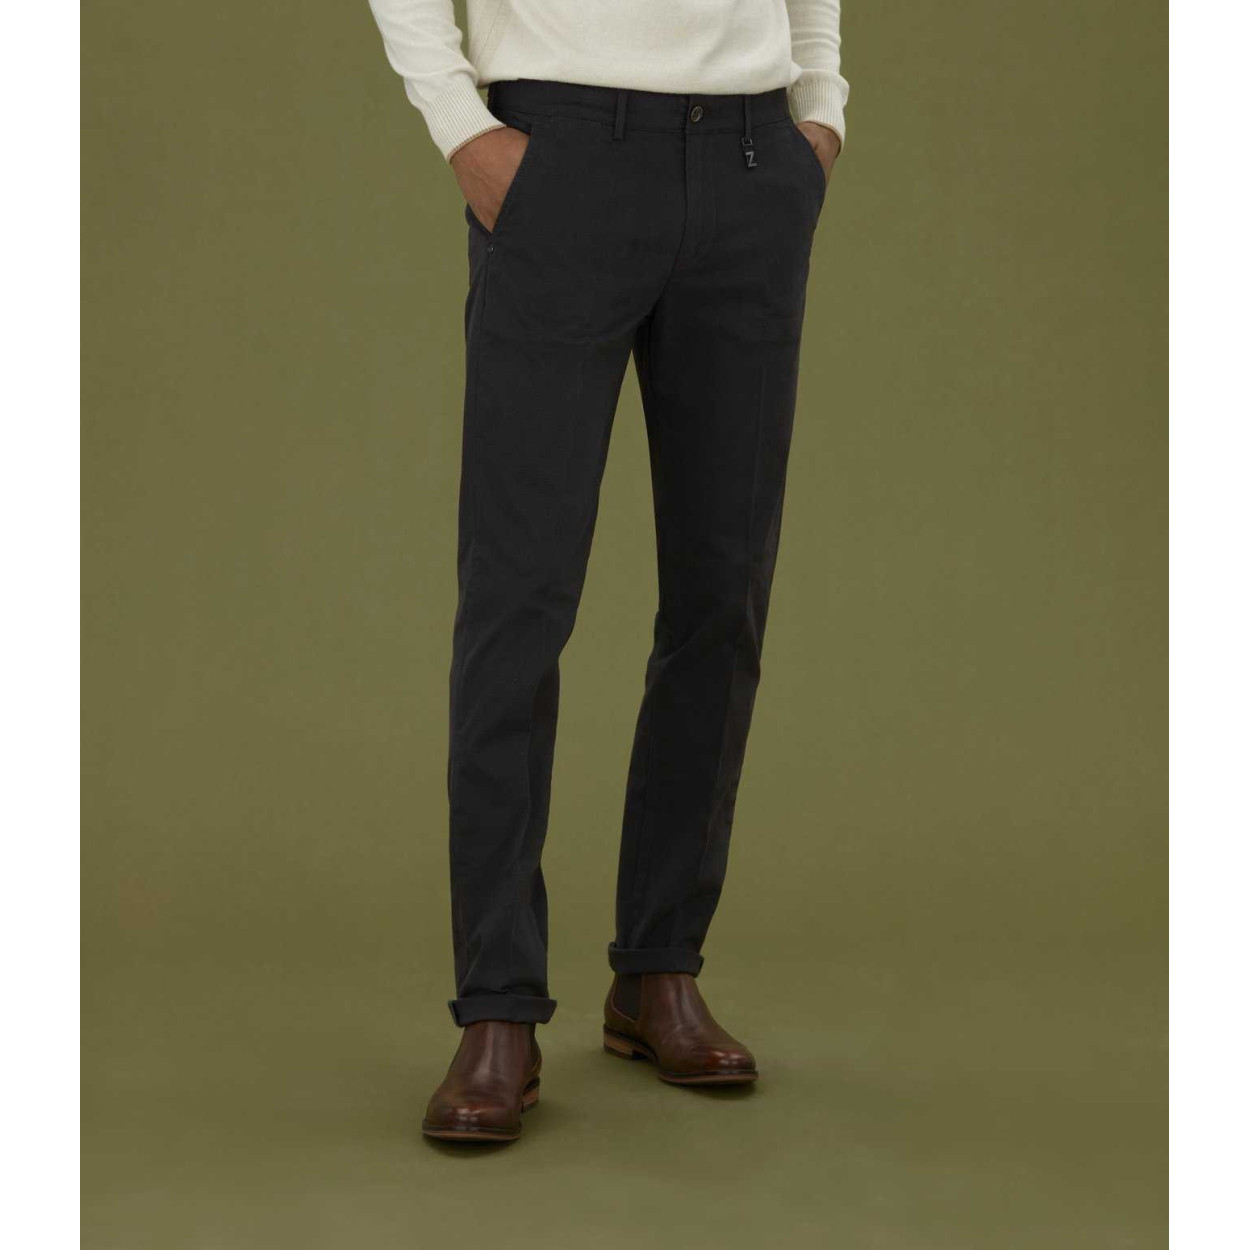 Pantalon Homme Izac Cristal Beige ou Noir, e-shop Cloane, disponible en magasins à Vannes